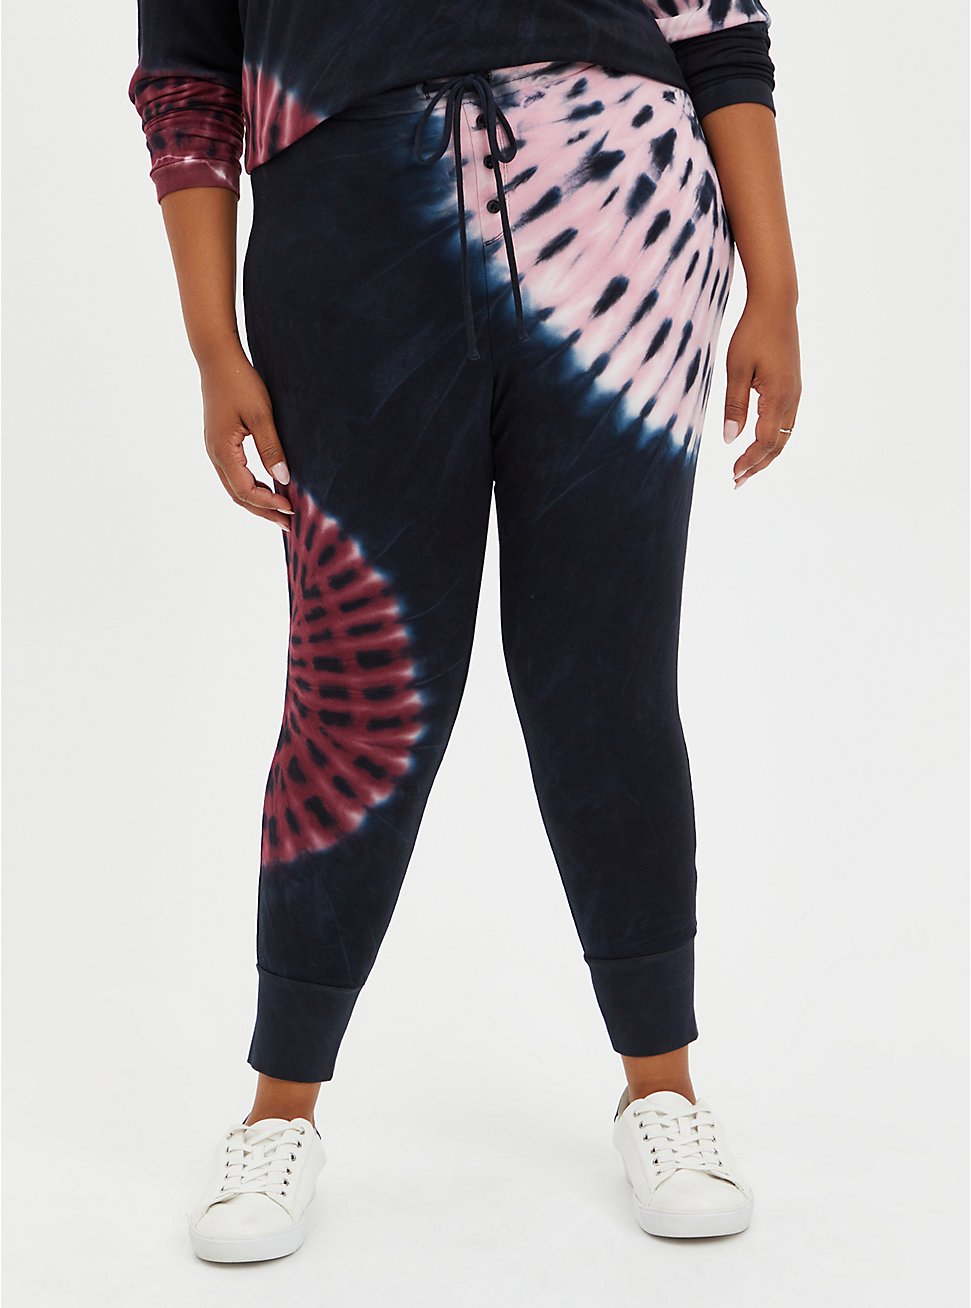 Sleep Legging -  Dream Fleece Tie-Dye Black & Pink , MULTI, hi-res